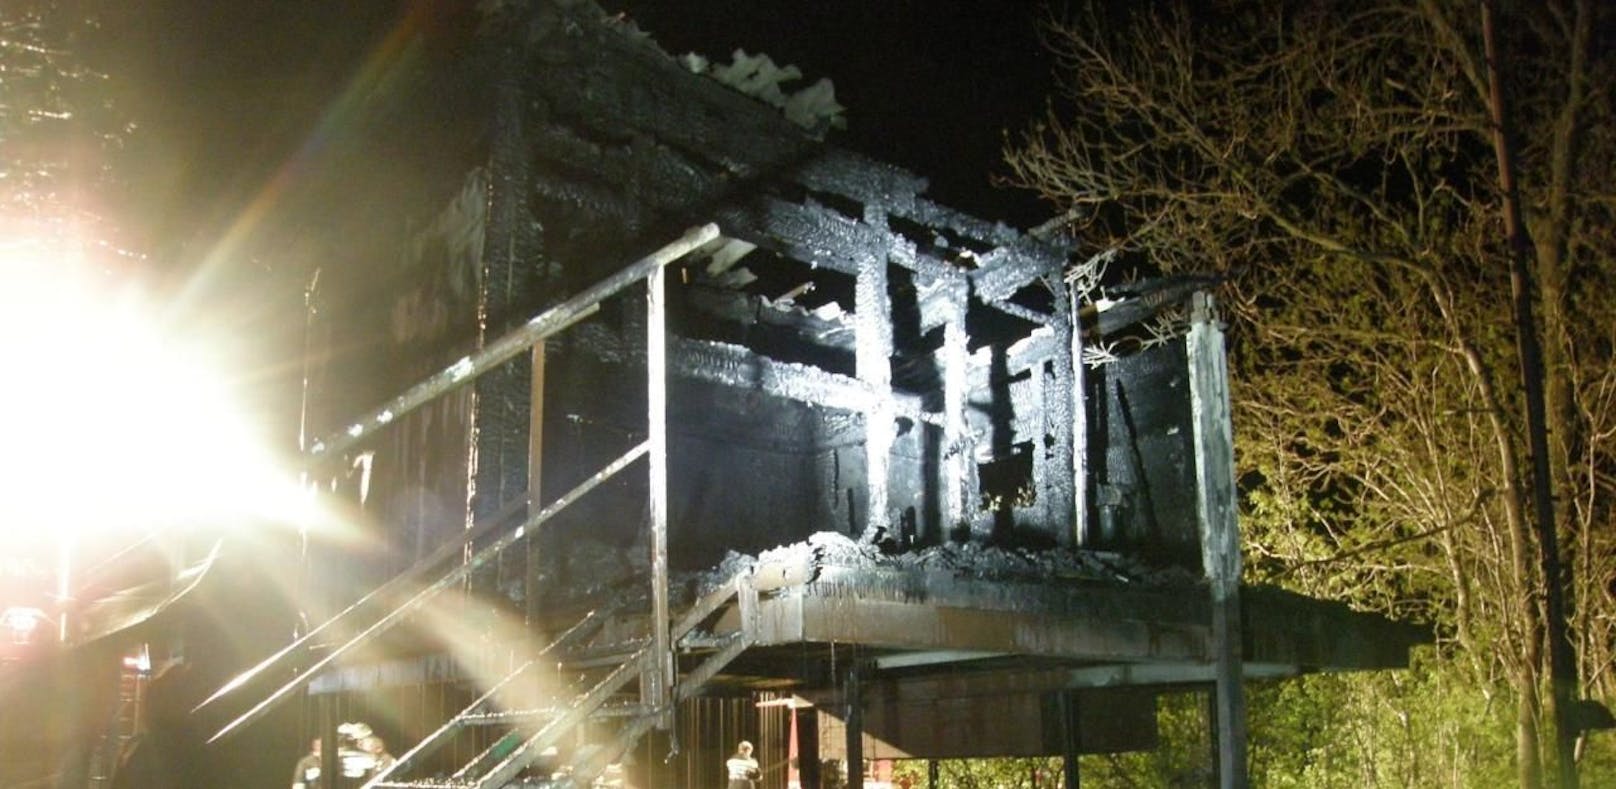 Stelzenhaus an der March brannte komplett aus